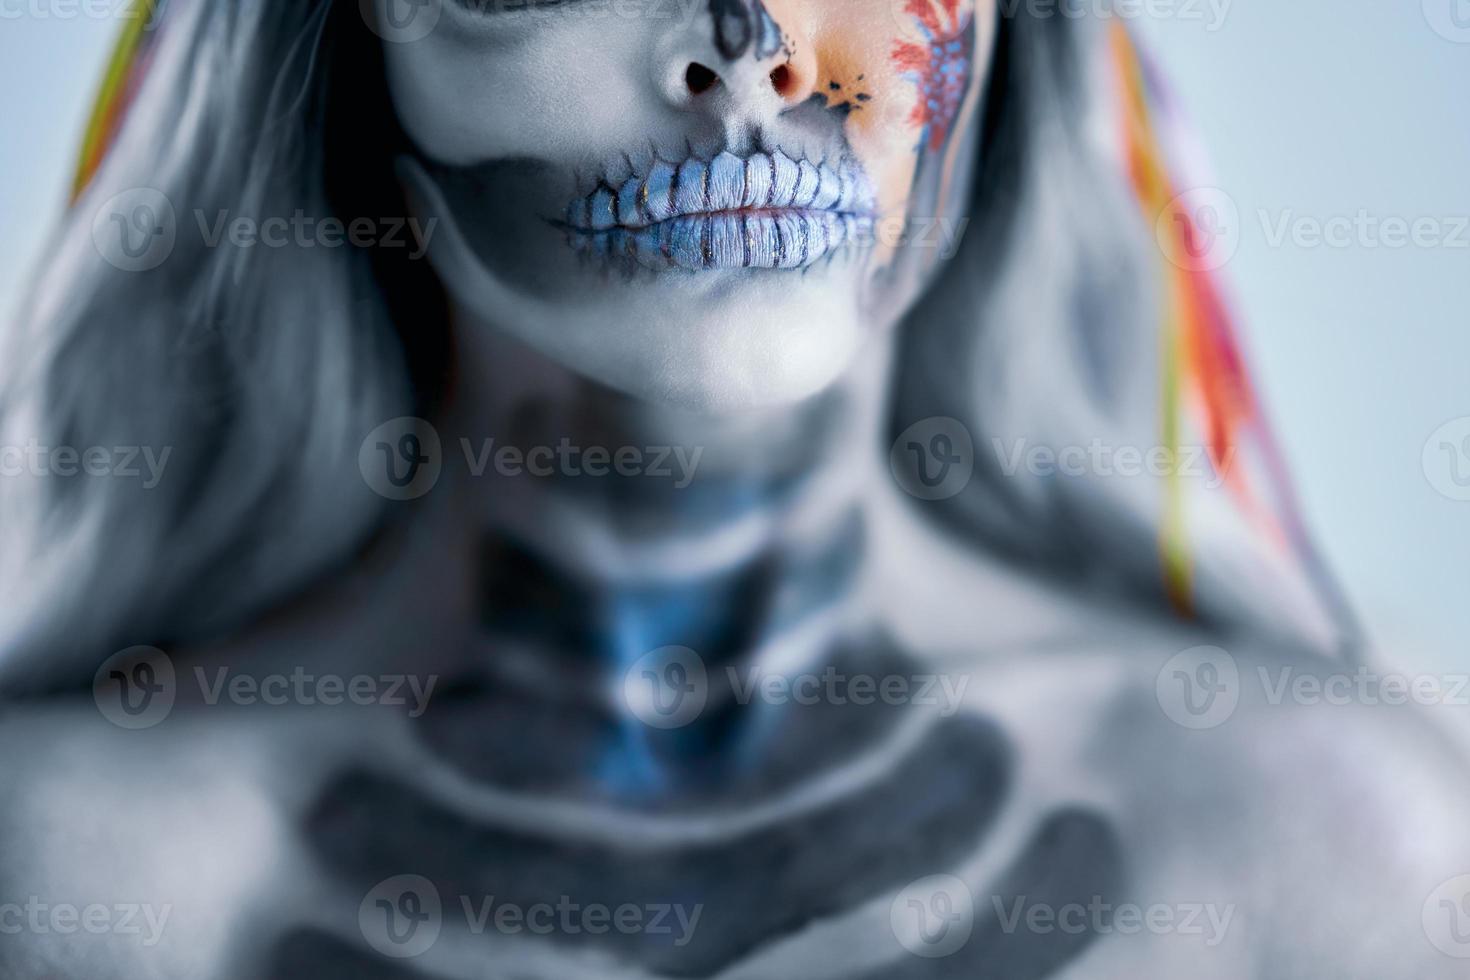 gespenstisches porträt der frau im halloween-gotischen make-up foto